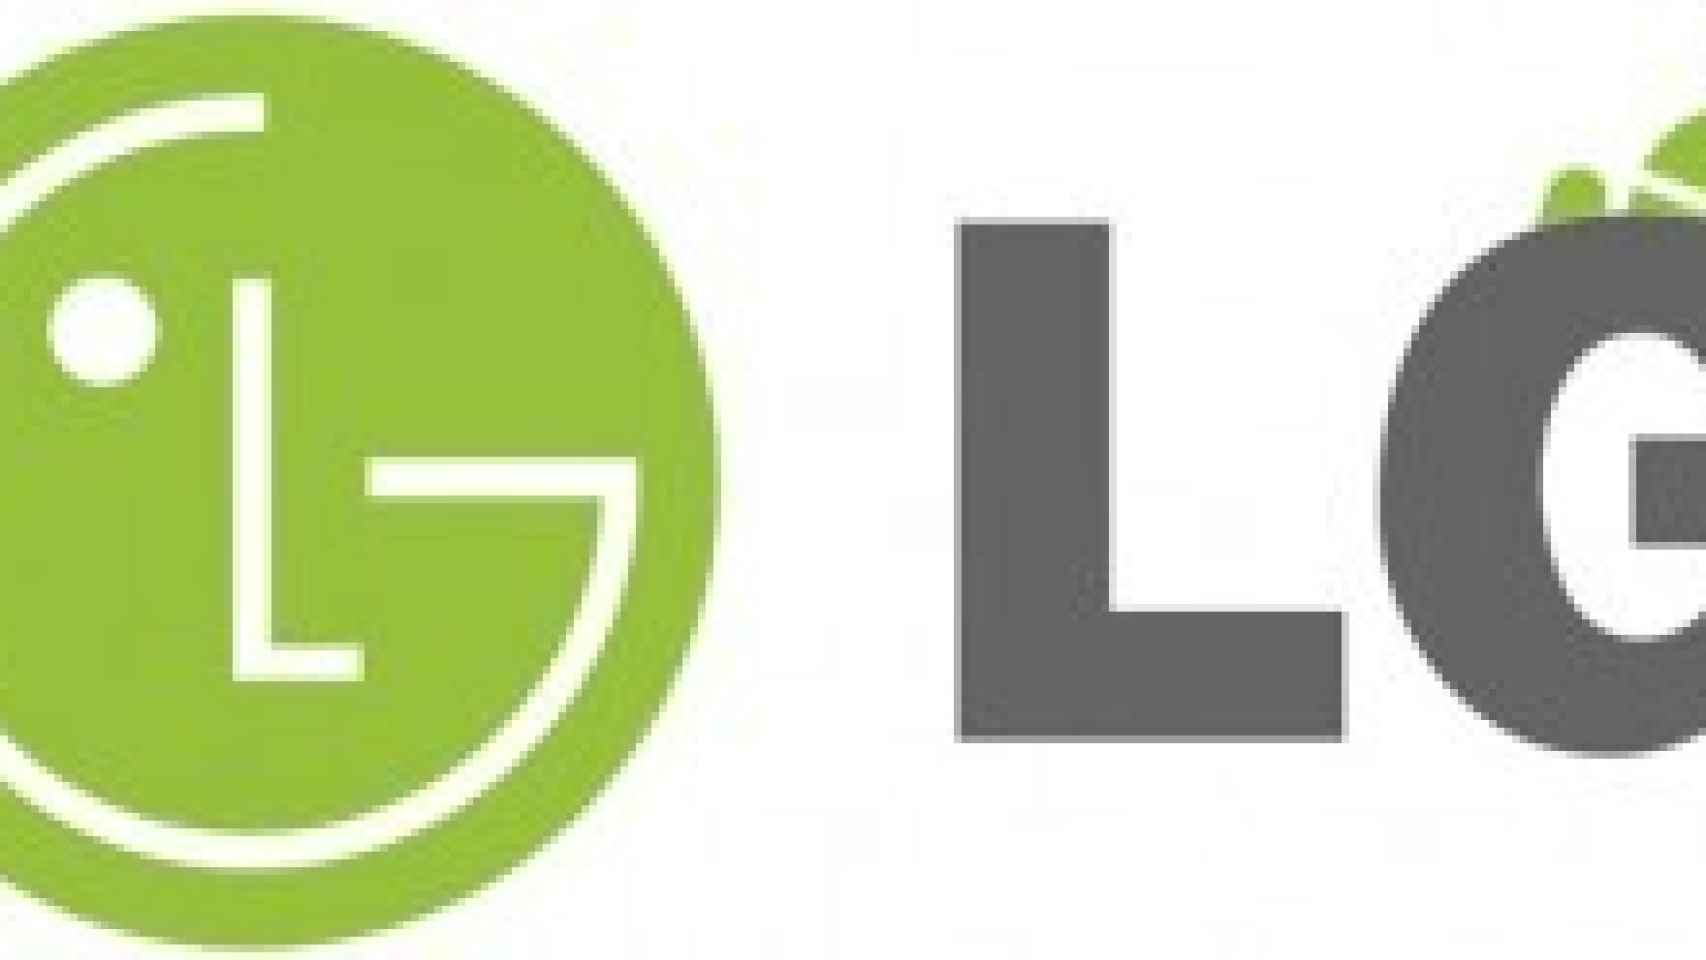 LG necesita una revolución: LG Eclipse Quadcore Krait